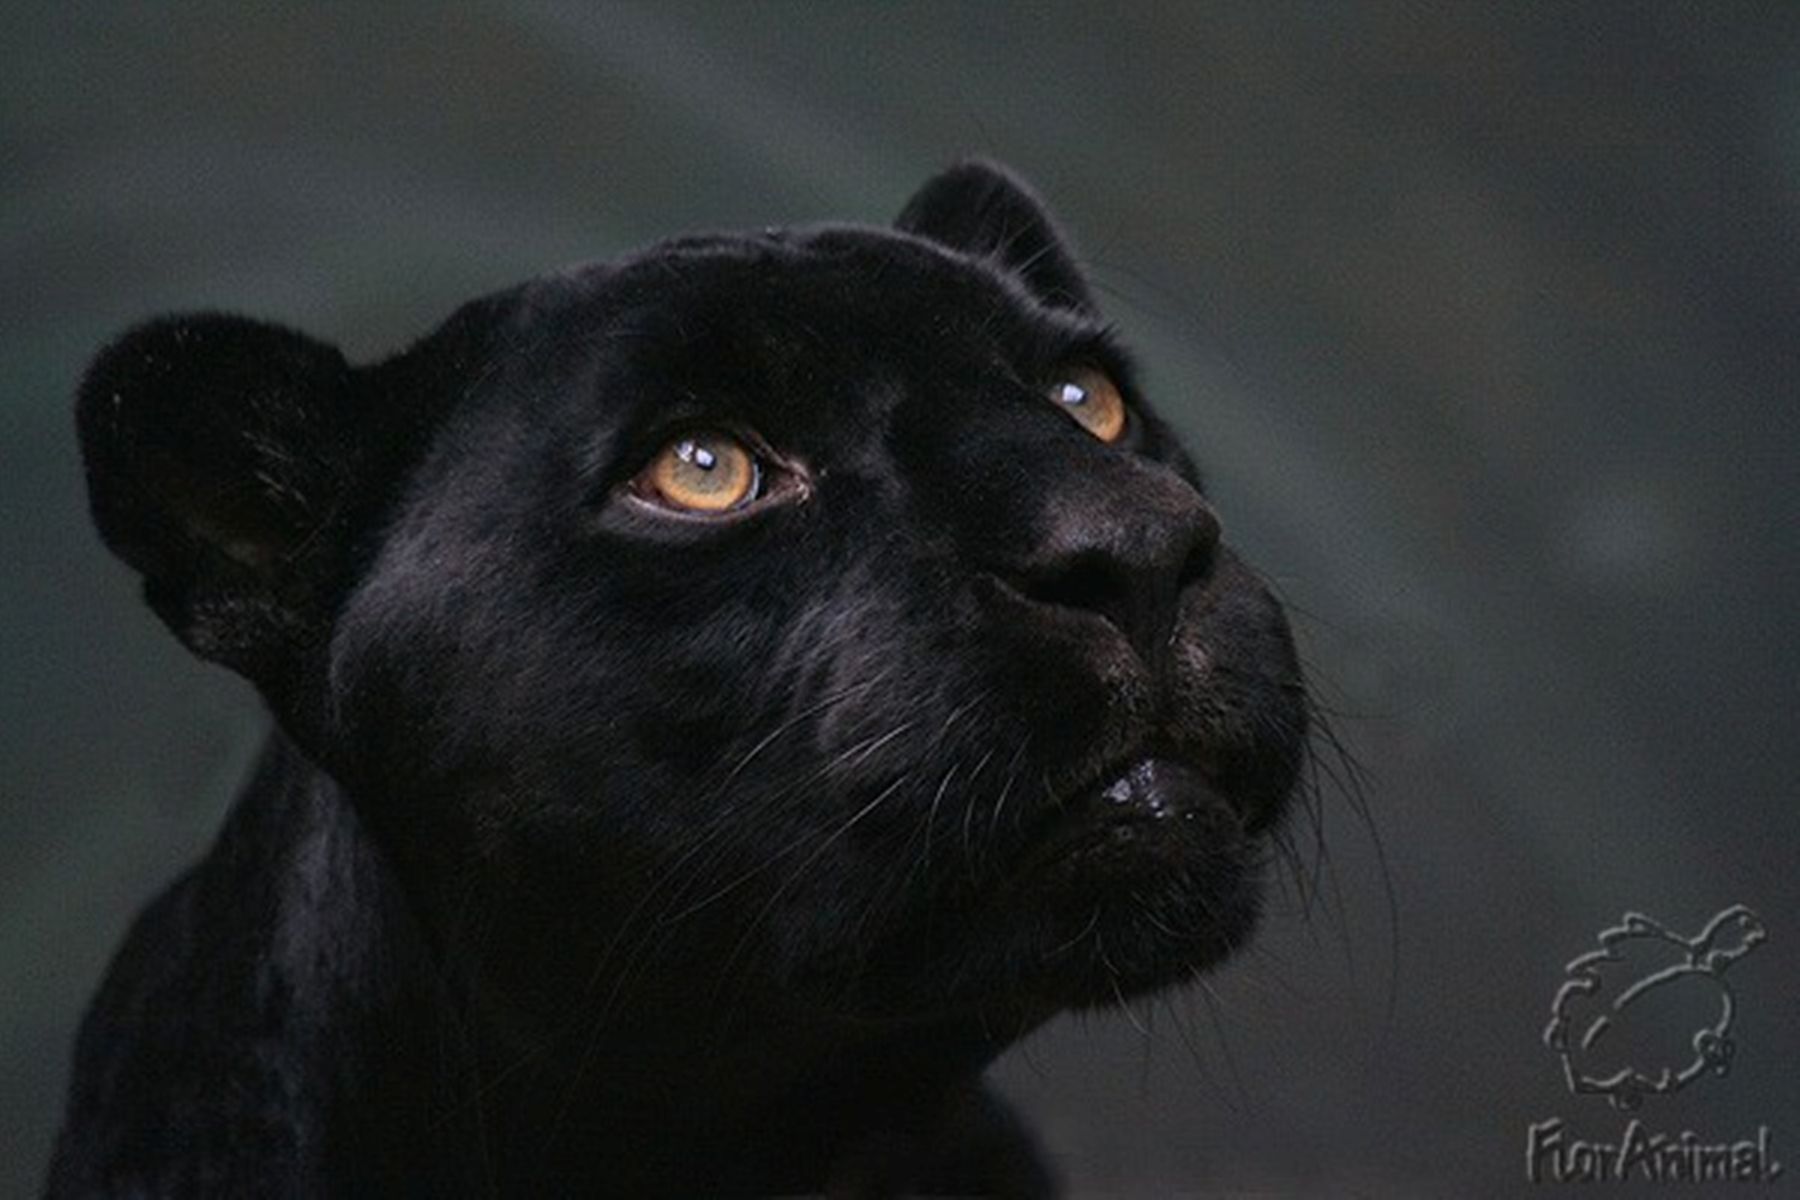 《黑豹》影评 Black Panther 豹喜贺岁漫威大片_哔哩哔哩 (゜-゜)つロ 干杯~-bilibili